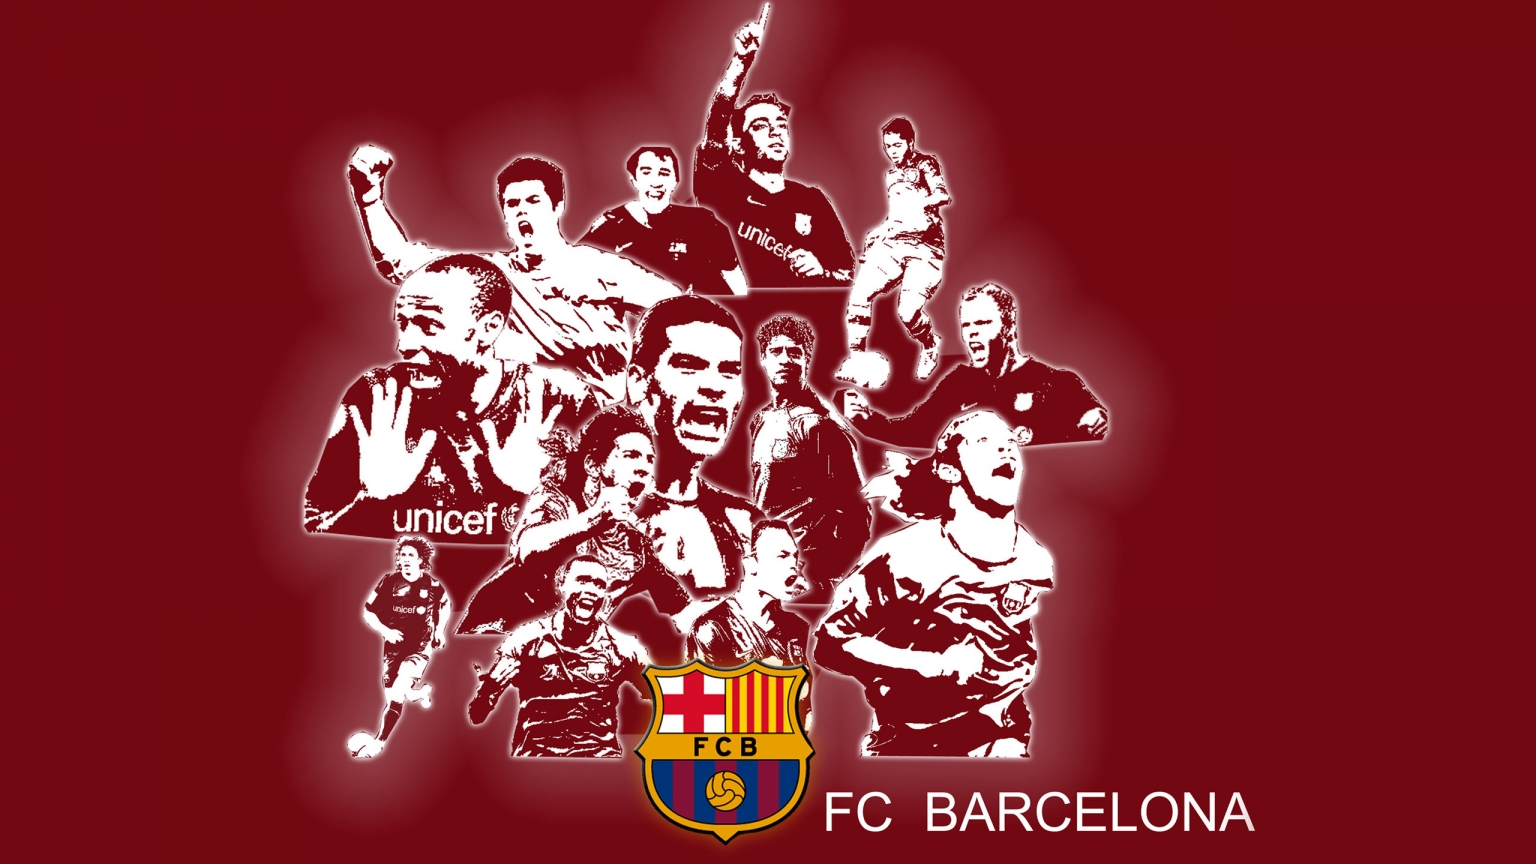 FC Barcelona for 1536 x 864 HDTV resolution